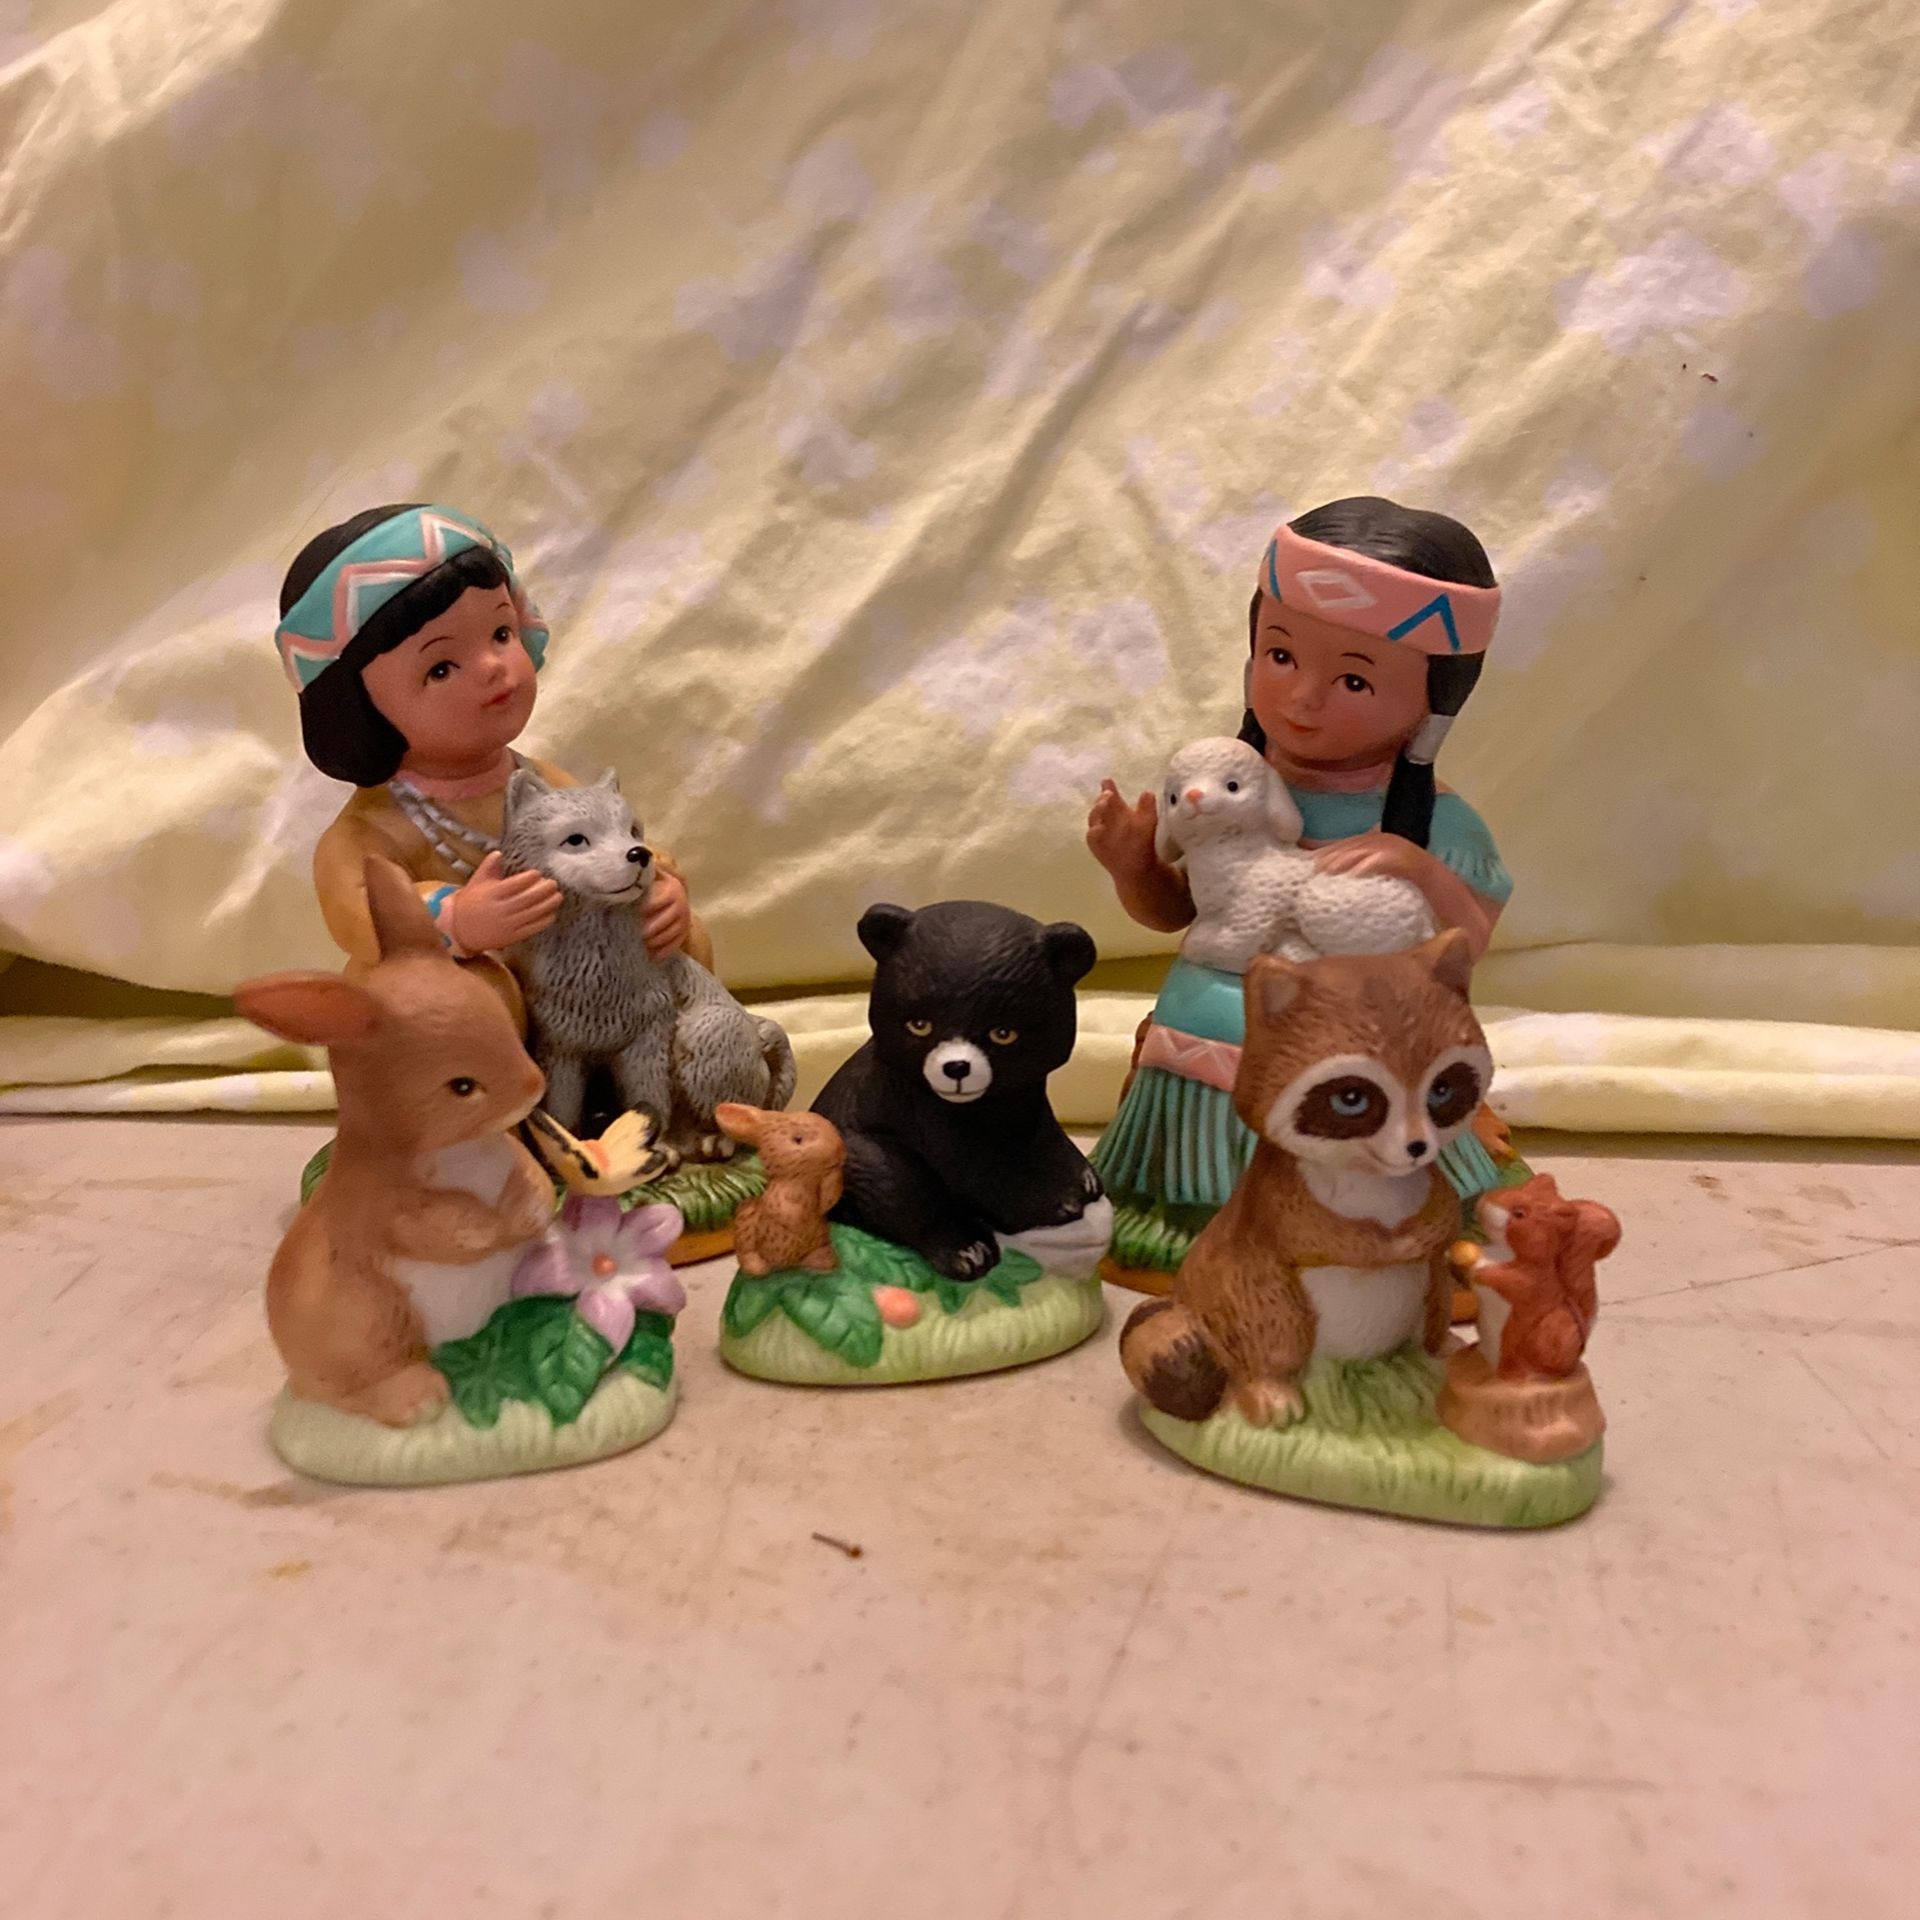 Ceramic figurines native American children